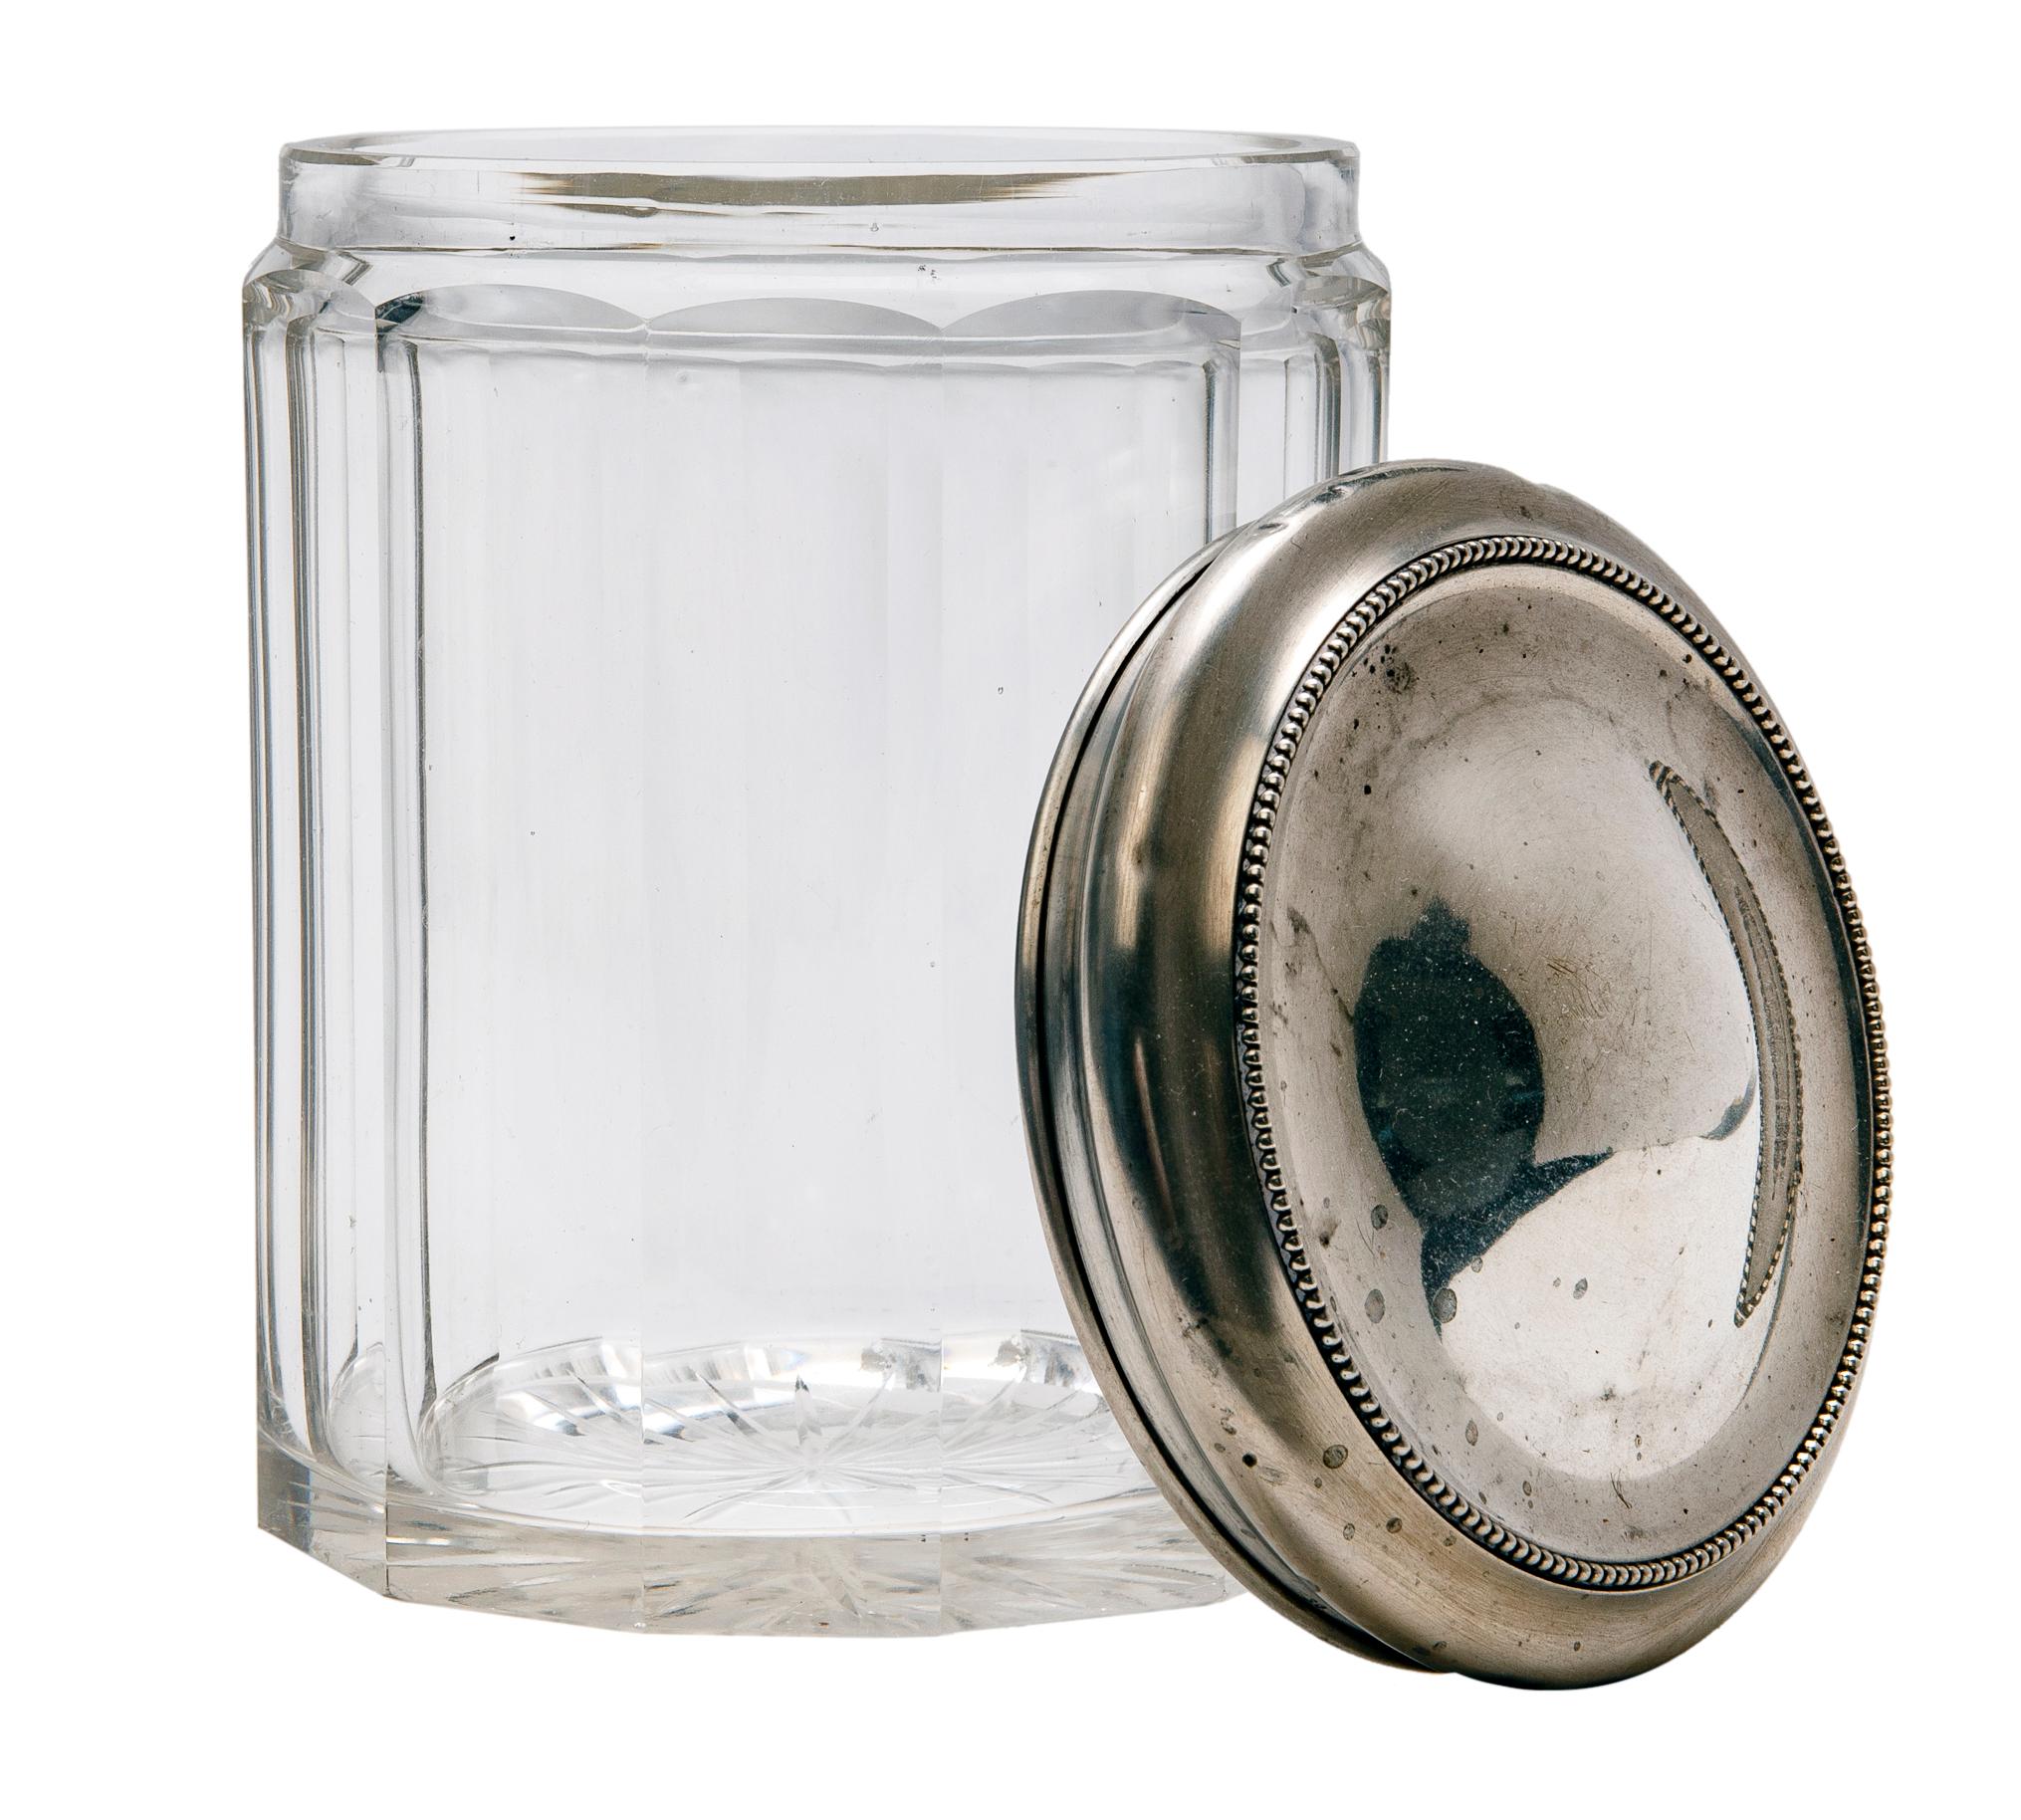 Jarre Ledax en cristal taillé avec des panneaux cannelés, le couvercle, en argent, a un petit bord perlé. Marqué sterling. Ébréchure sur un des panneaux du bas.